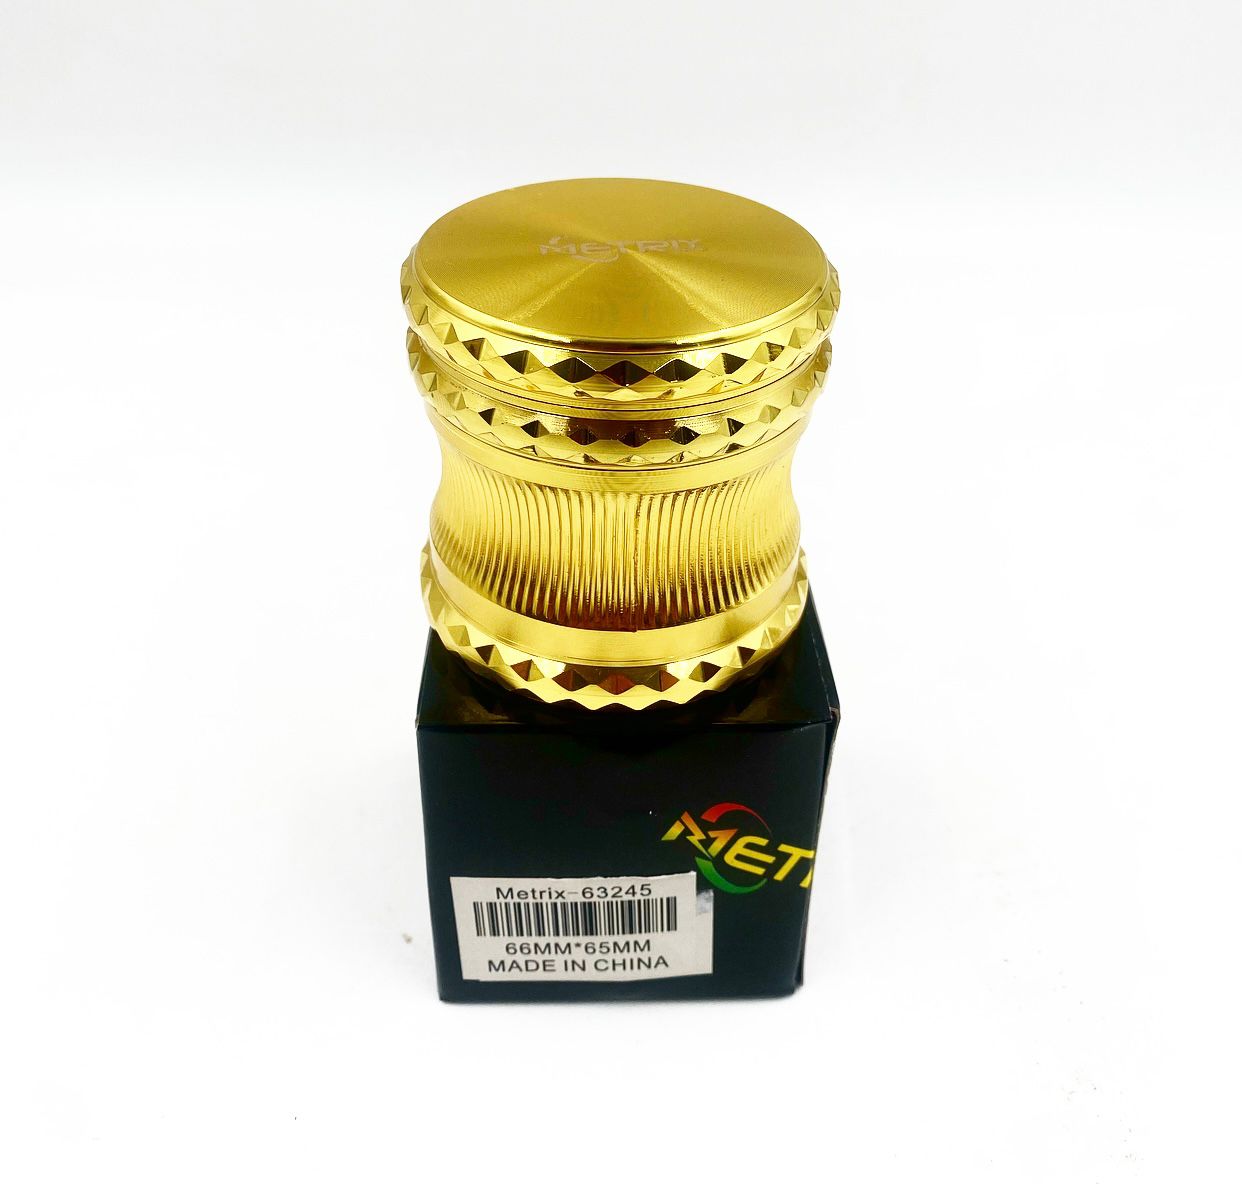 Metrix-63245 Metallic Gold Grinder